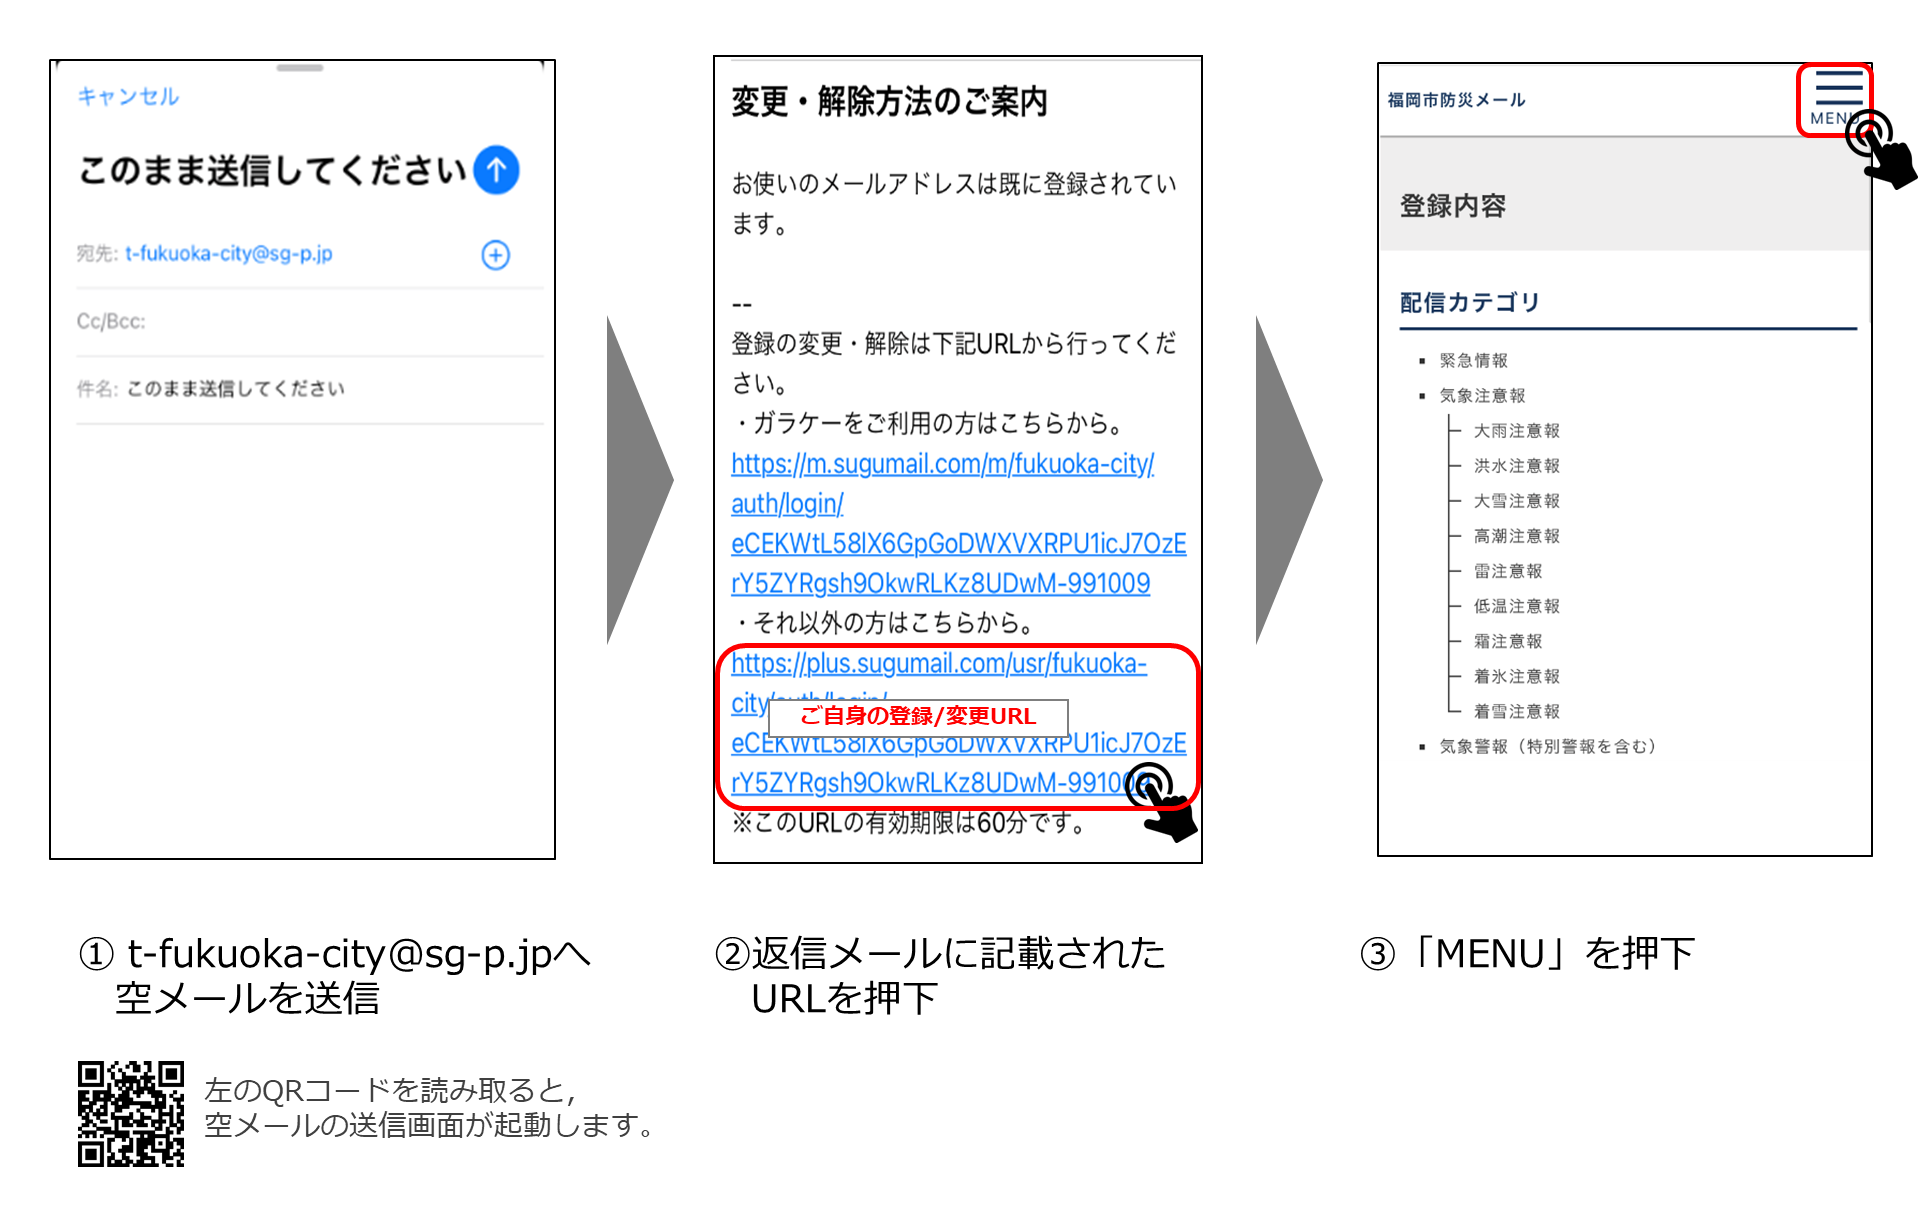 防災メールの削除イメージ,1 t-fukuoka-city@sg-p.jpへ空メールを送信,2 返信メールに記載されたURLを押下,3 「MENU」を押下